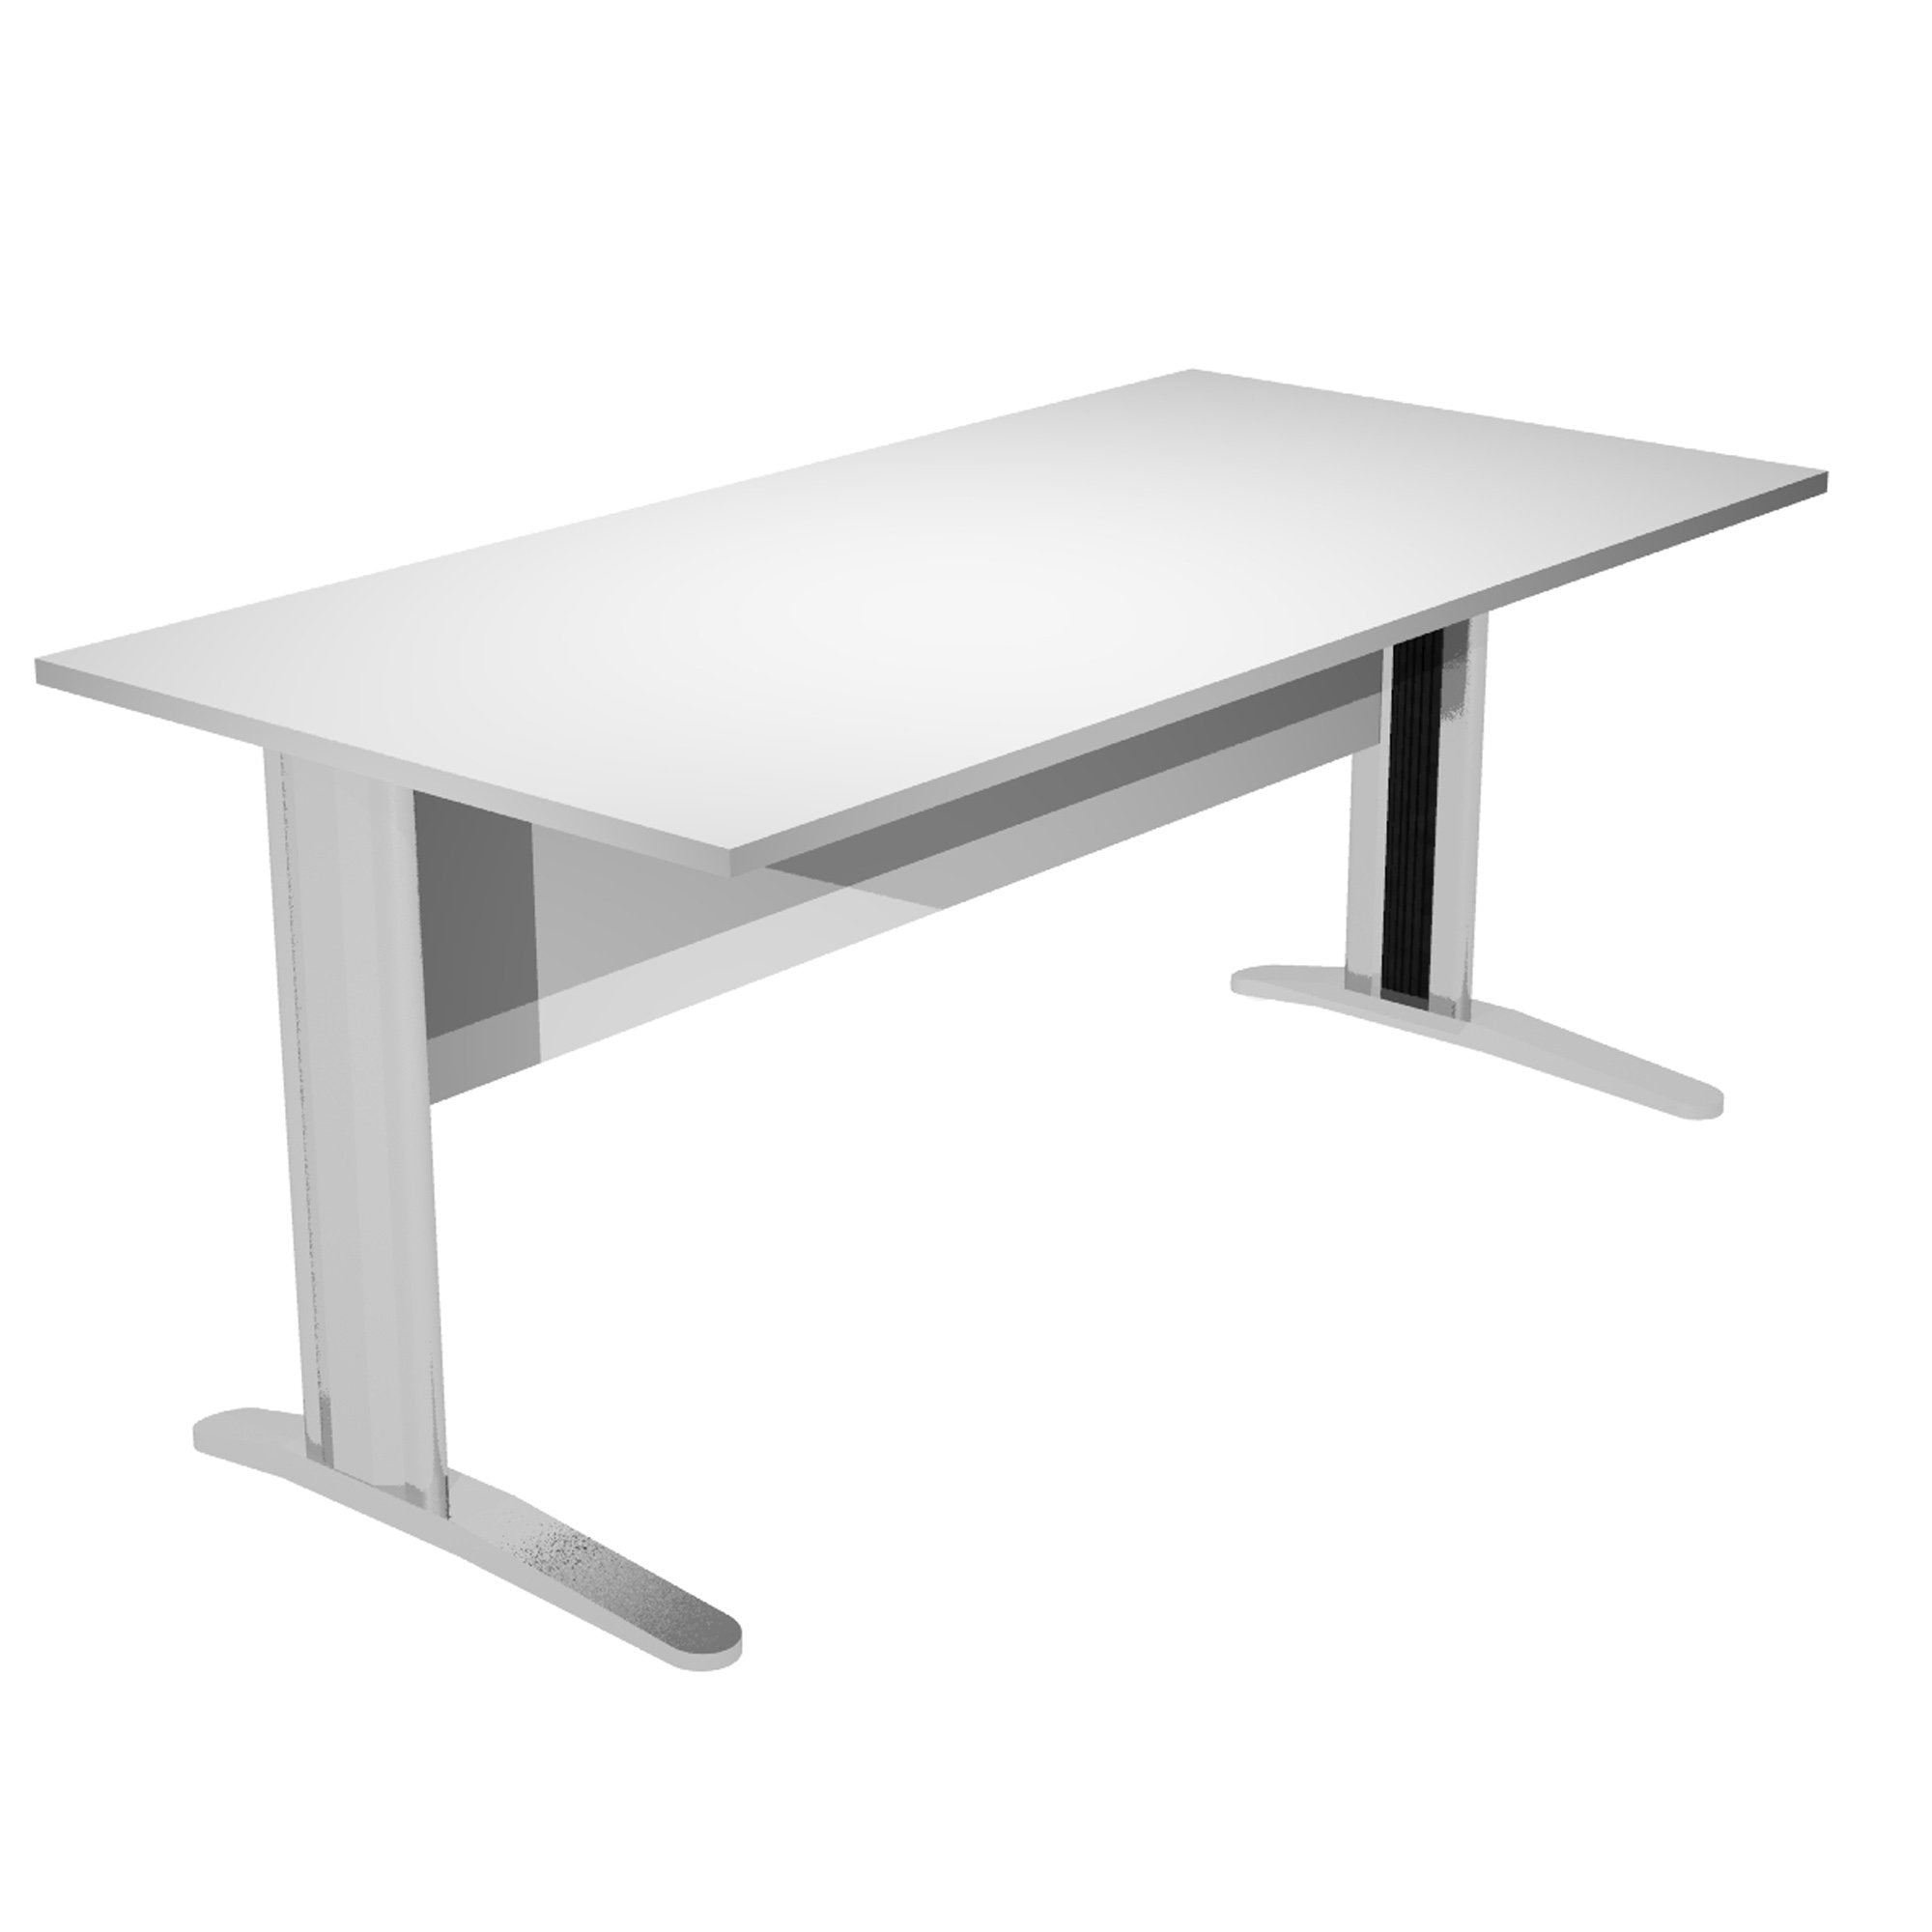 artexport-scrivania-lineare-160x80cm-grigio-fianchi-vernic-effetto-cromato-easy